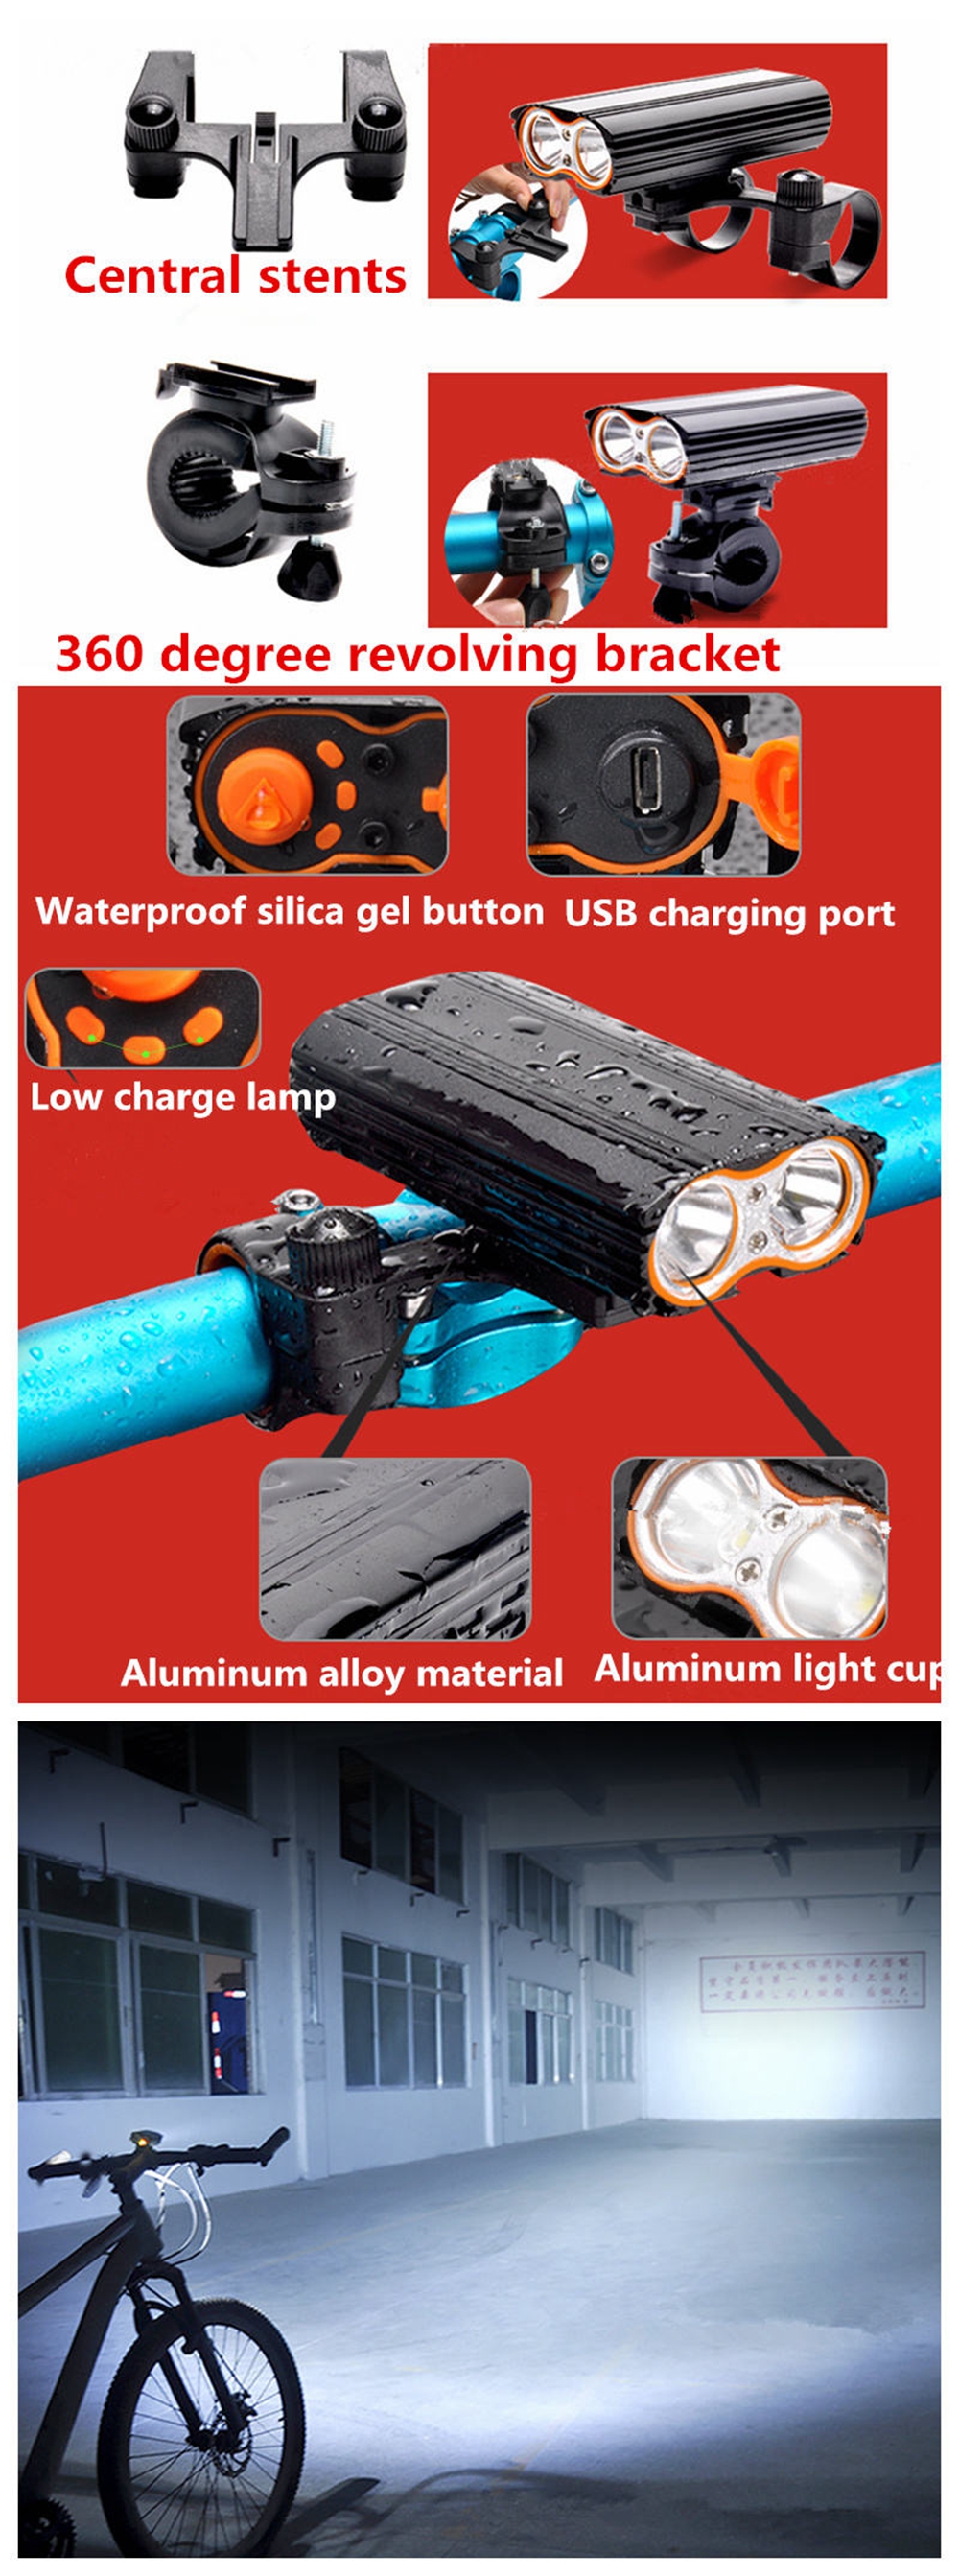 ZHISHUNJIA 1600lm 4-Mode LED Flashlight Headlamp USB Rechargeable Bicycle Lamp